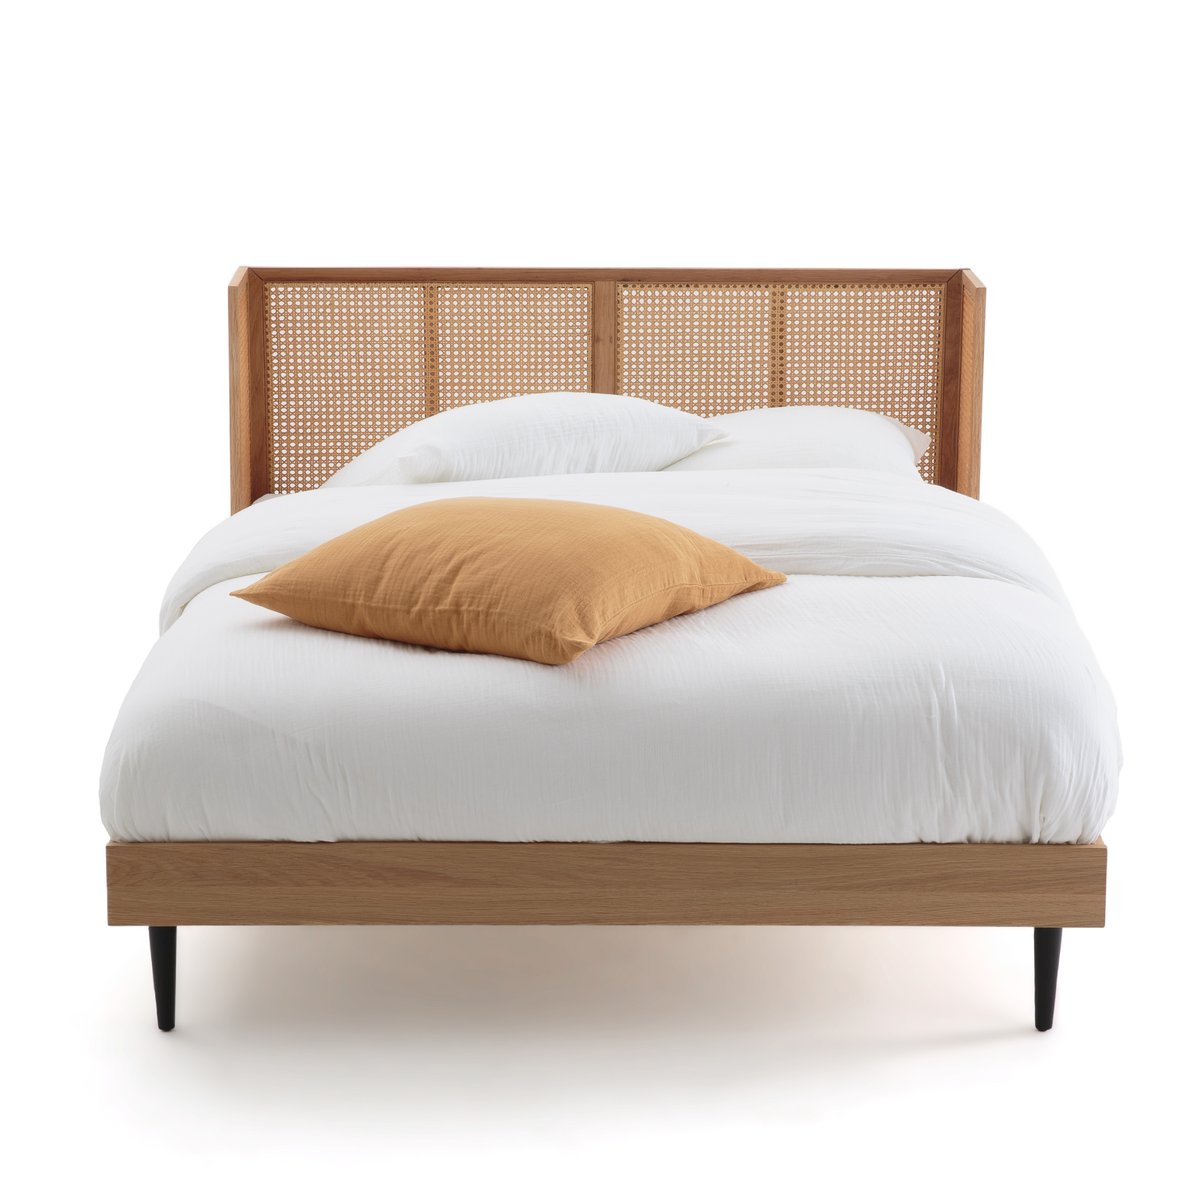 Кровать La Redoute Из плетеного ротанга с сеткой WASKA 140 x 190 см каштановый, размер 140 x 190 см - фото 2